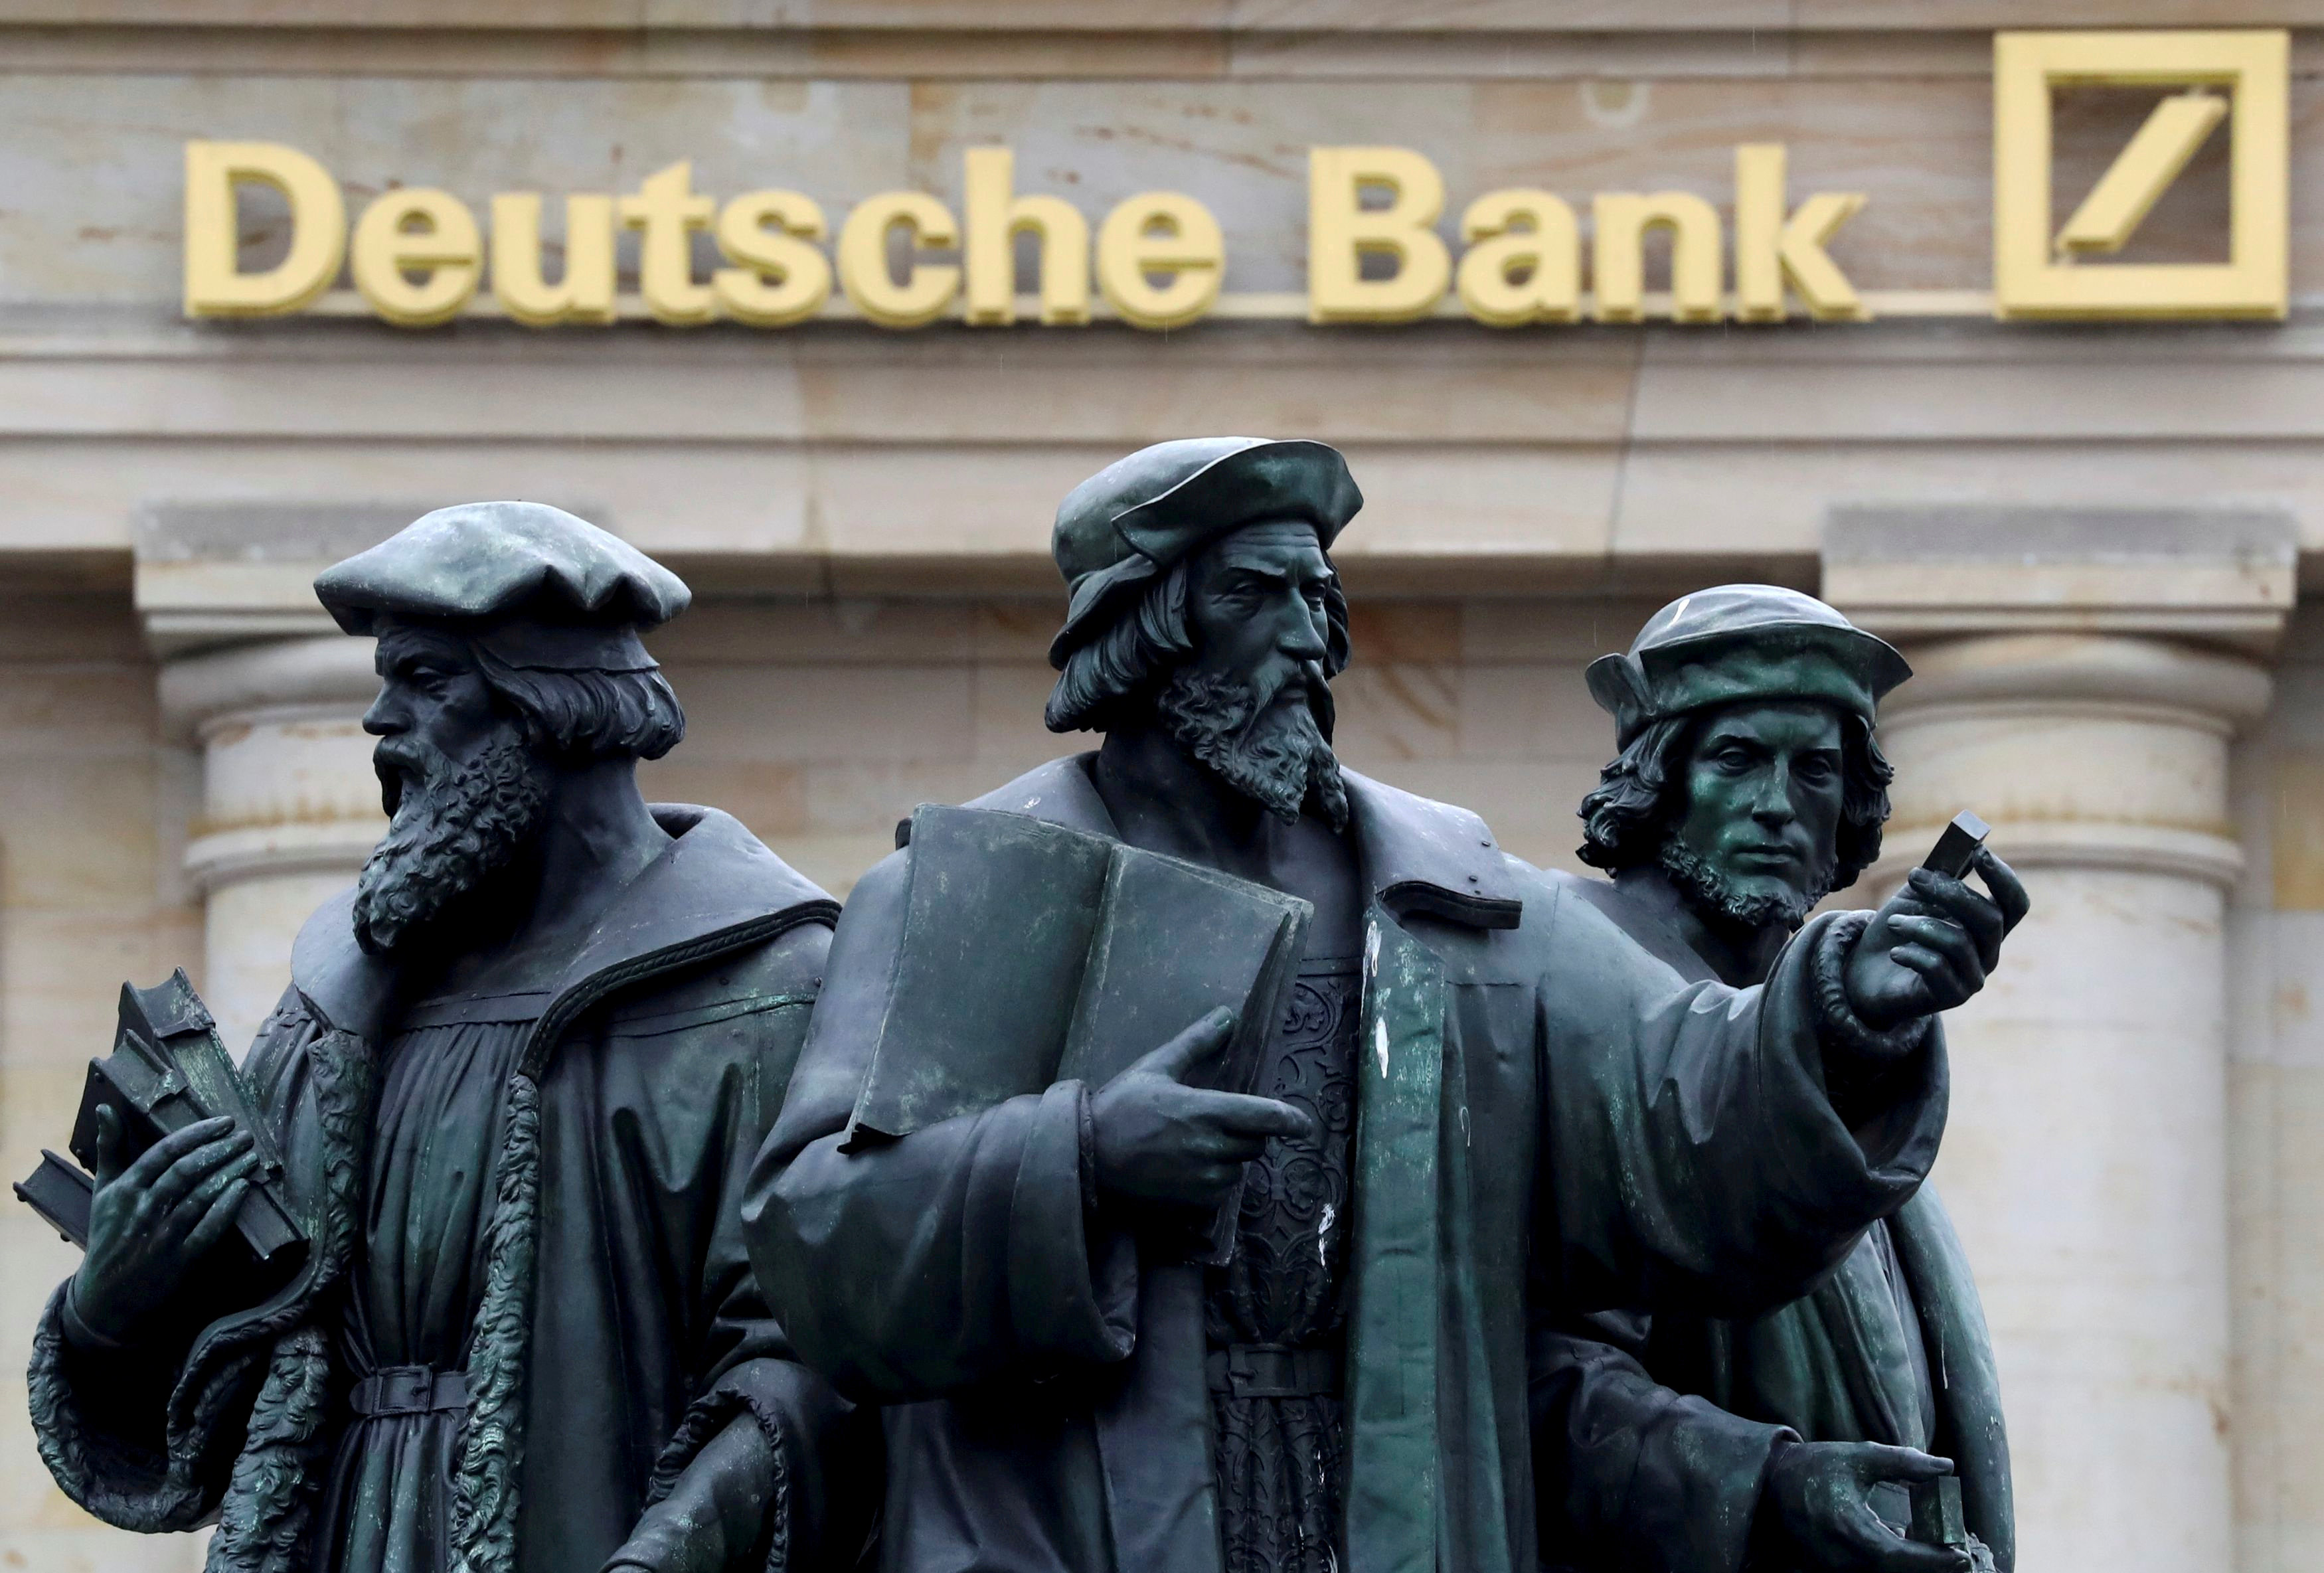 Υποχωρεί η θέση της Deutsche Βank στην αγορά επενδυτικής τραπεζικής